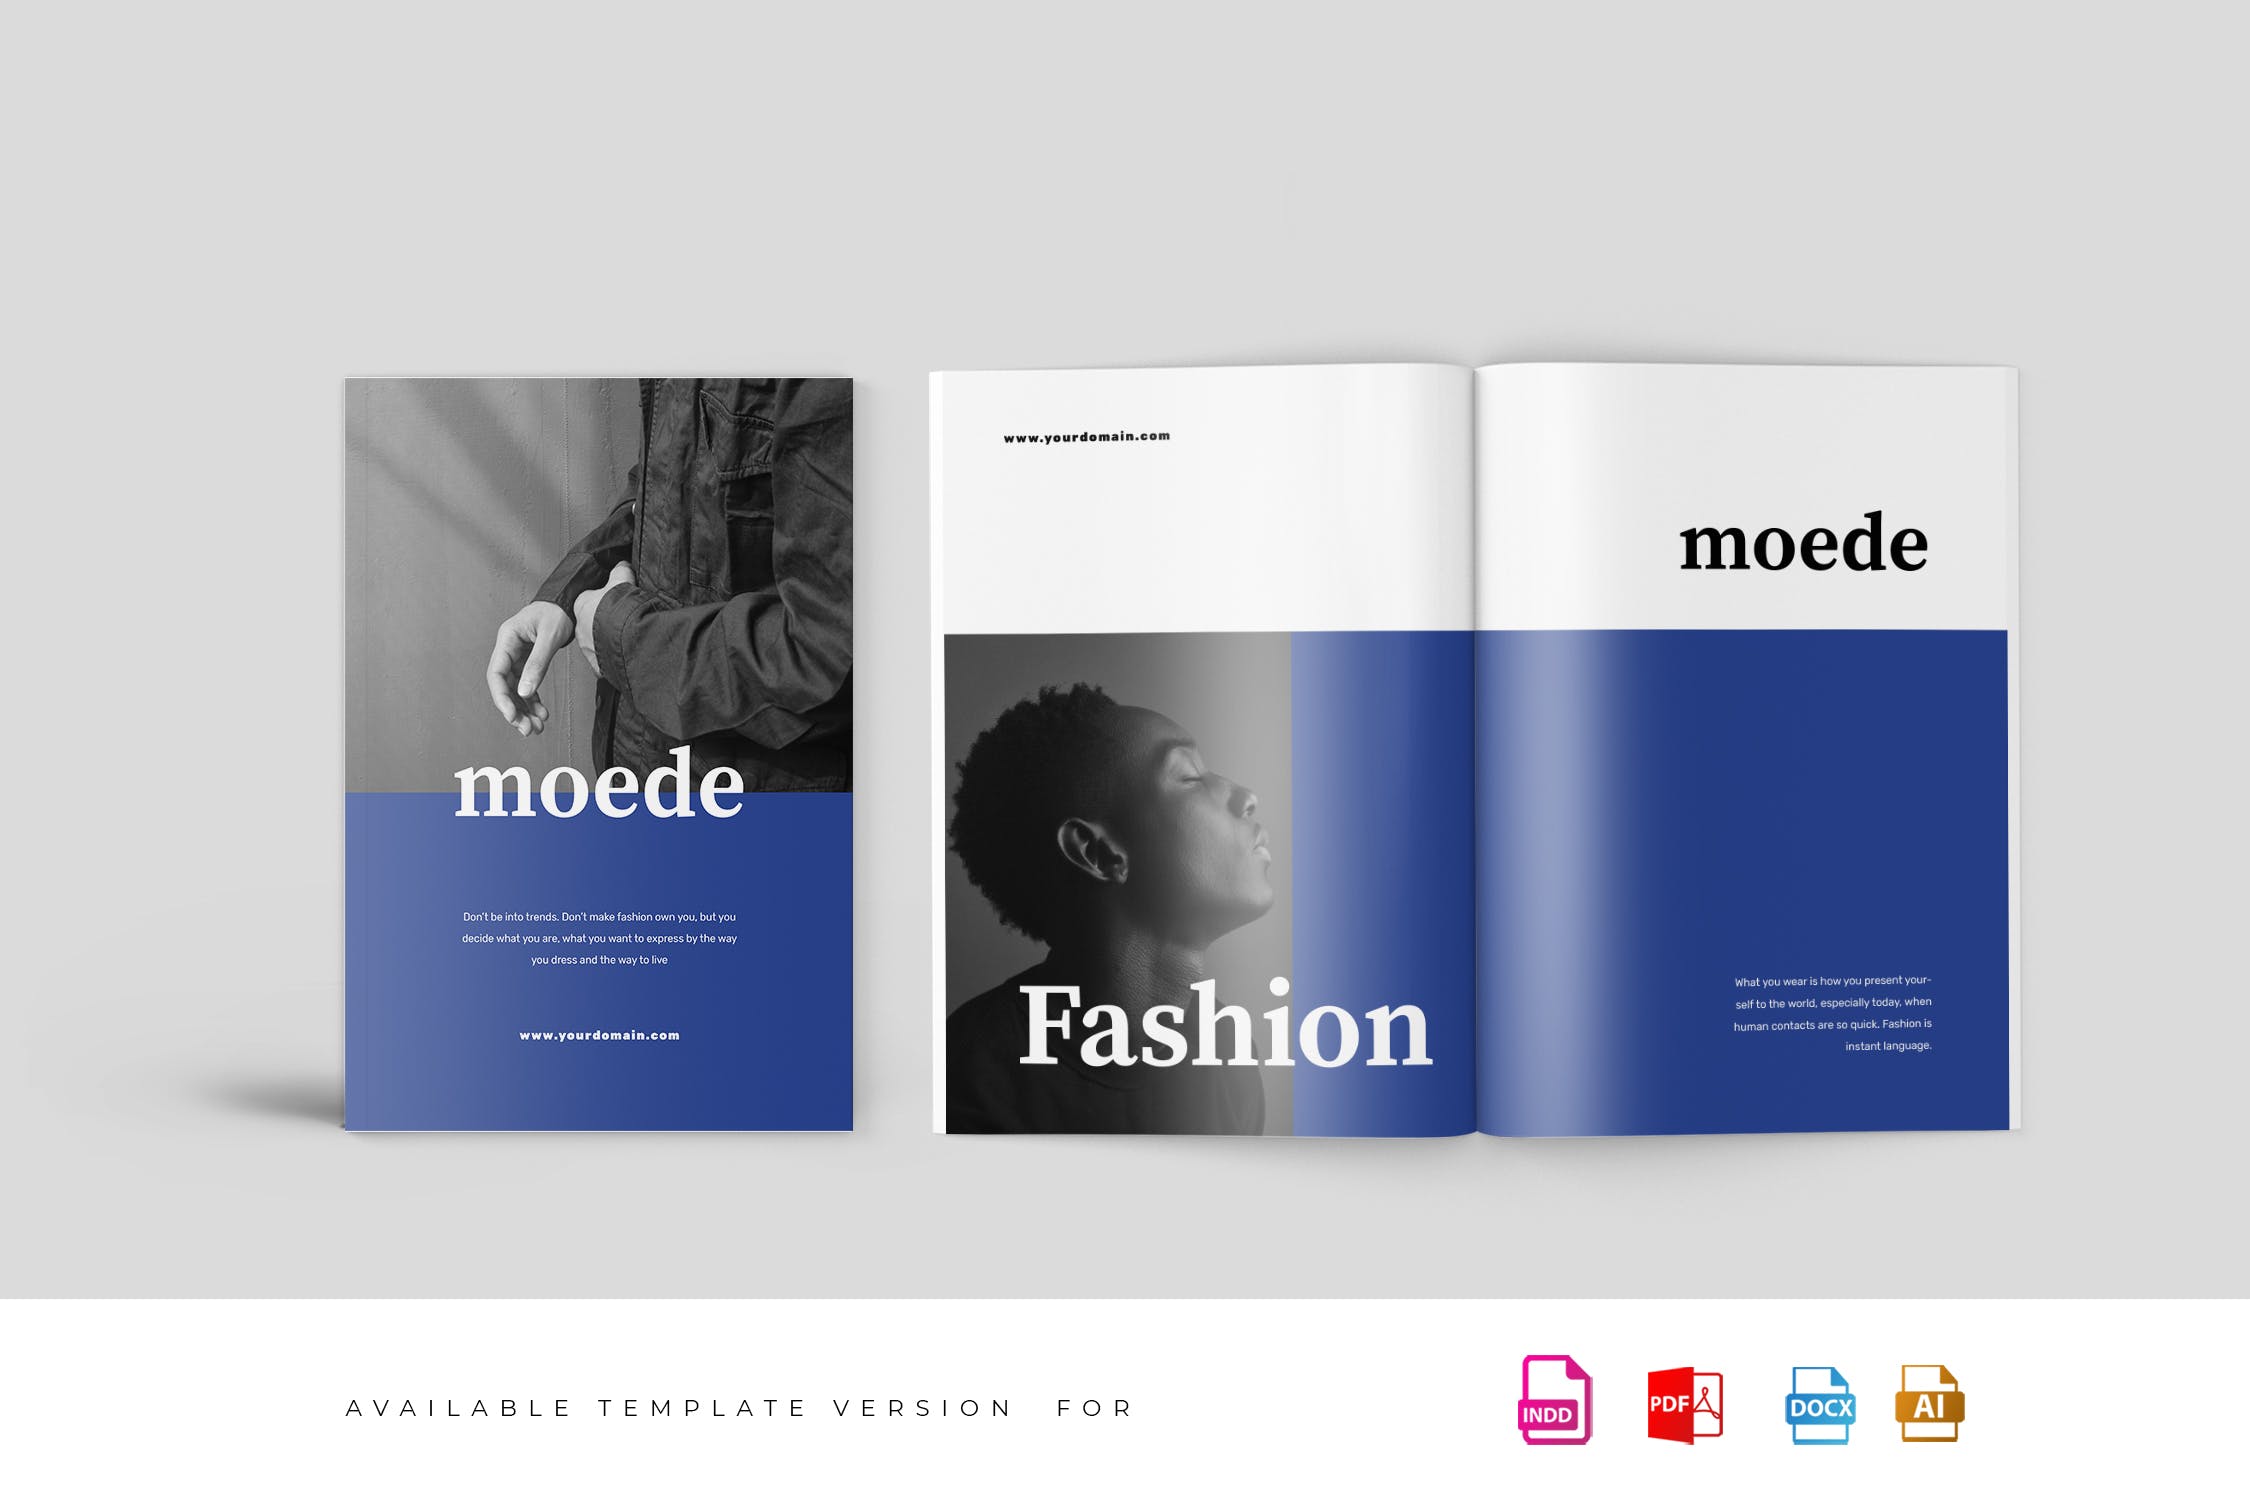 高端时尚服装品牌产品非凡图库精选目录设计模板 Moede Fashion Lookbook Catalogue插图(1)